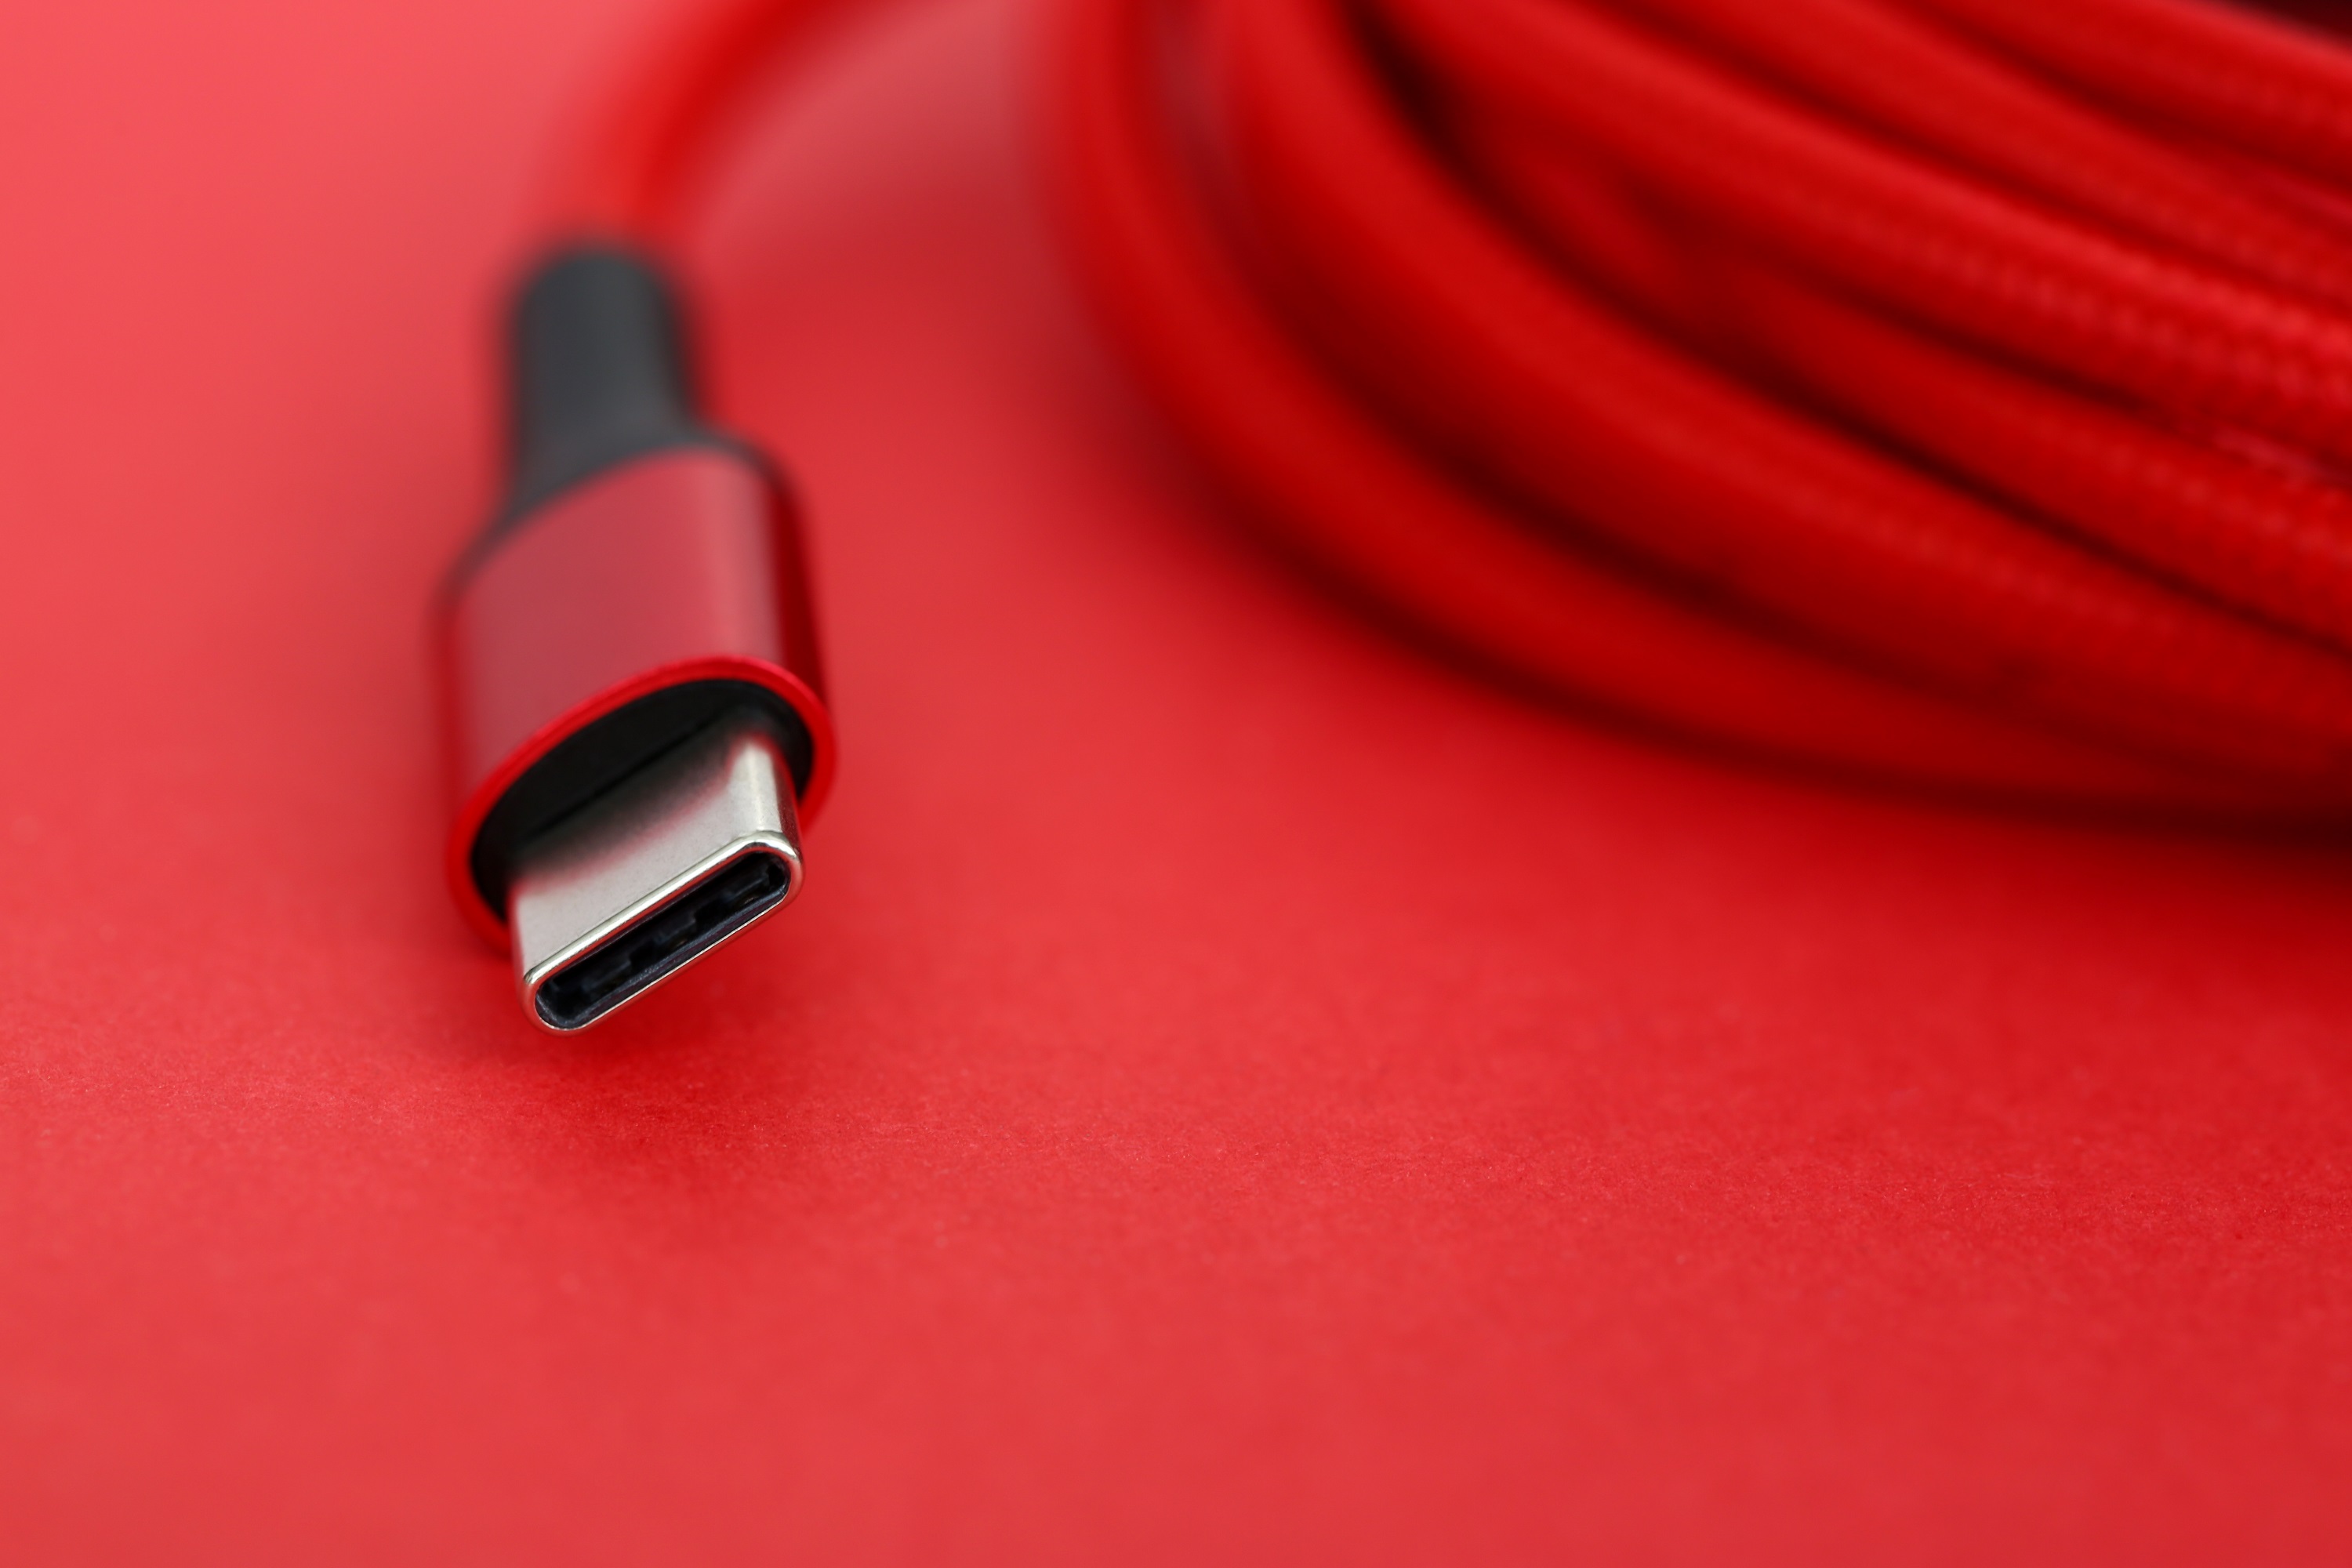 Extrémité du câble USB rouge posée sur la table en gros plan extrême